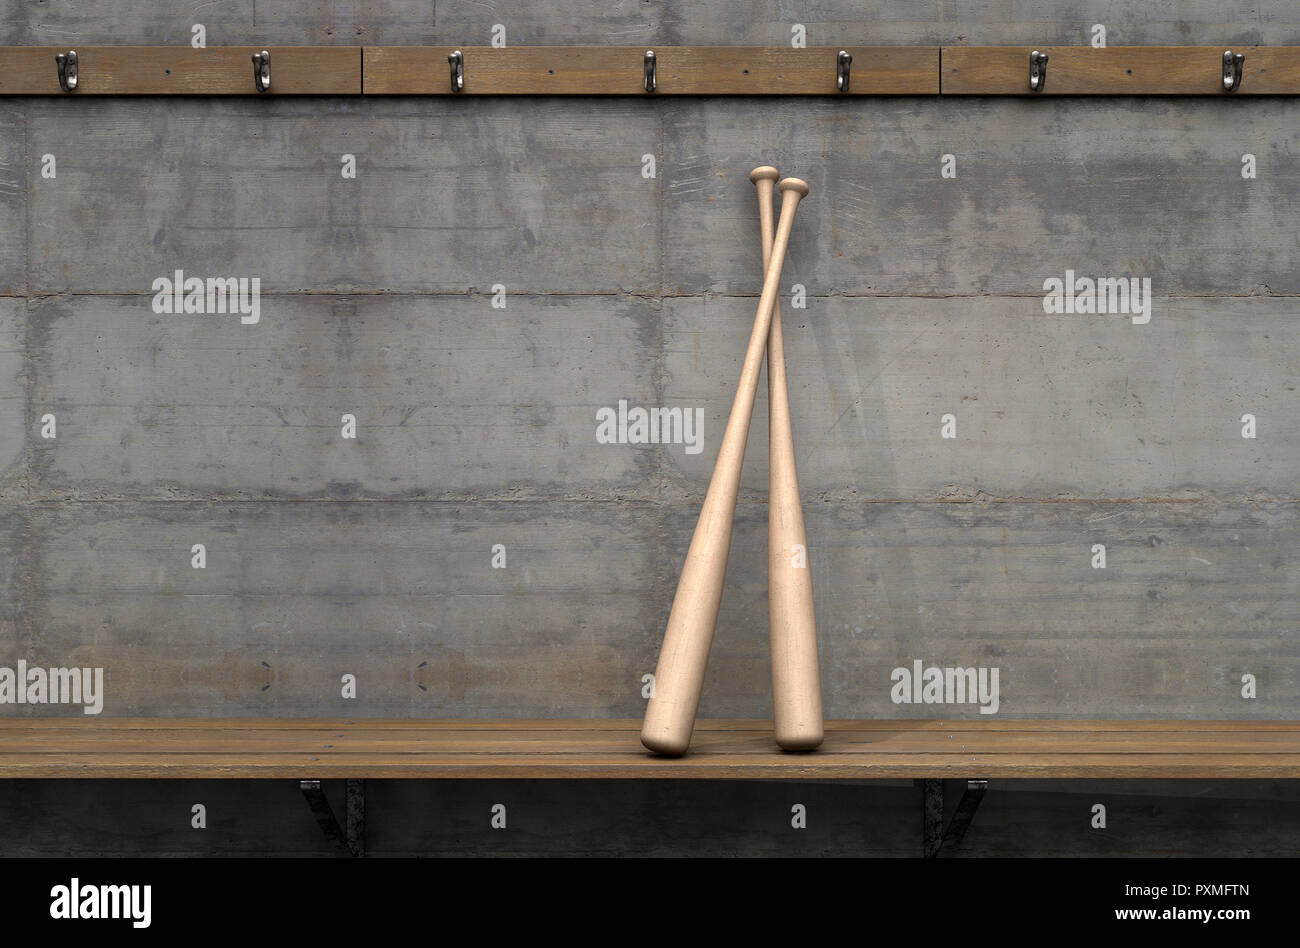 Zwei Baseballschläger auf einer Holzbank in einer heruntergekommenen sports Schließfach ändern - 3D-Rendering Stockfoto